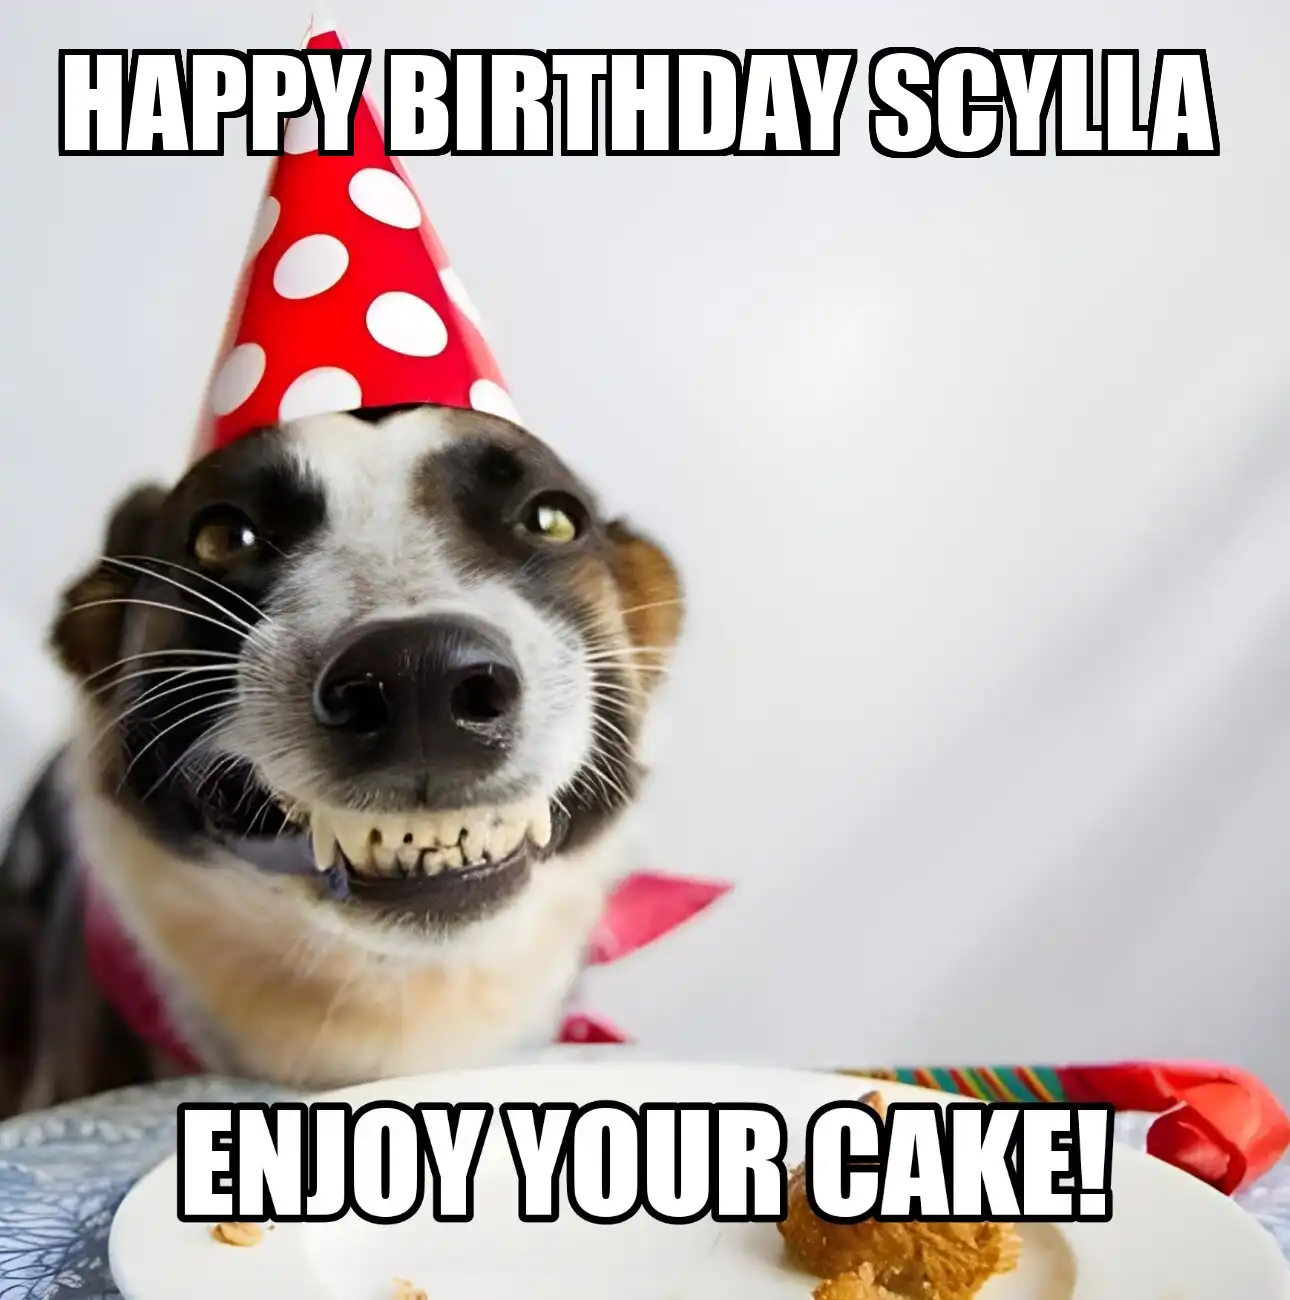 Happy Birthday Scylla Enjoy Your Cake Dog Meme